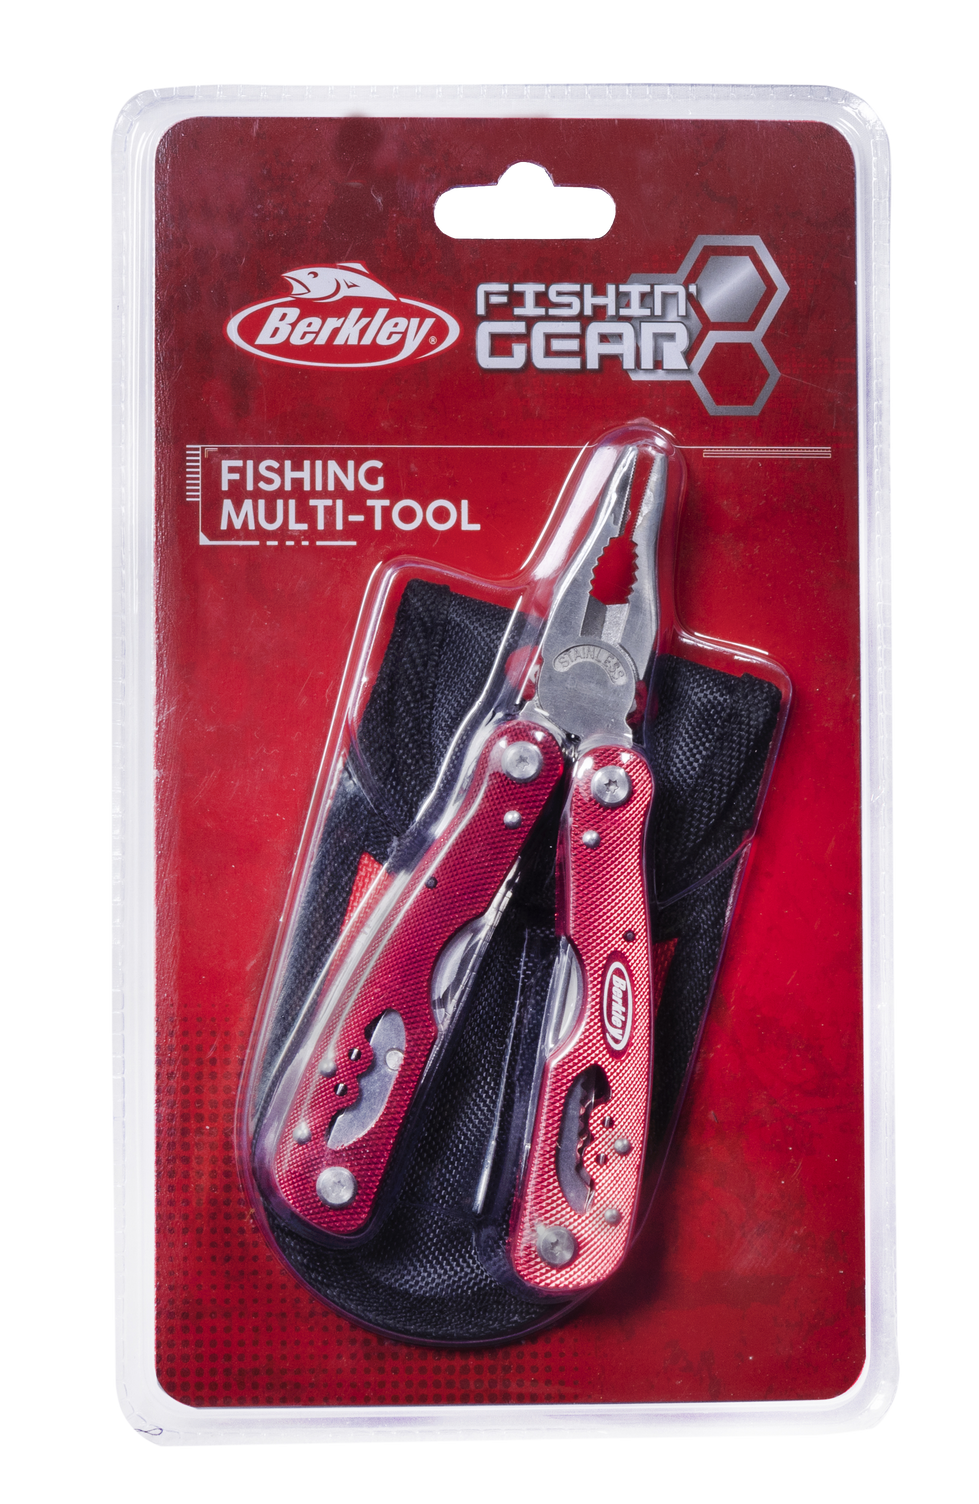 Berkley 1577552 Fishingear Fishing Multi Tool